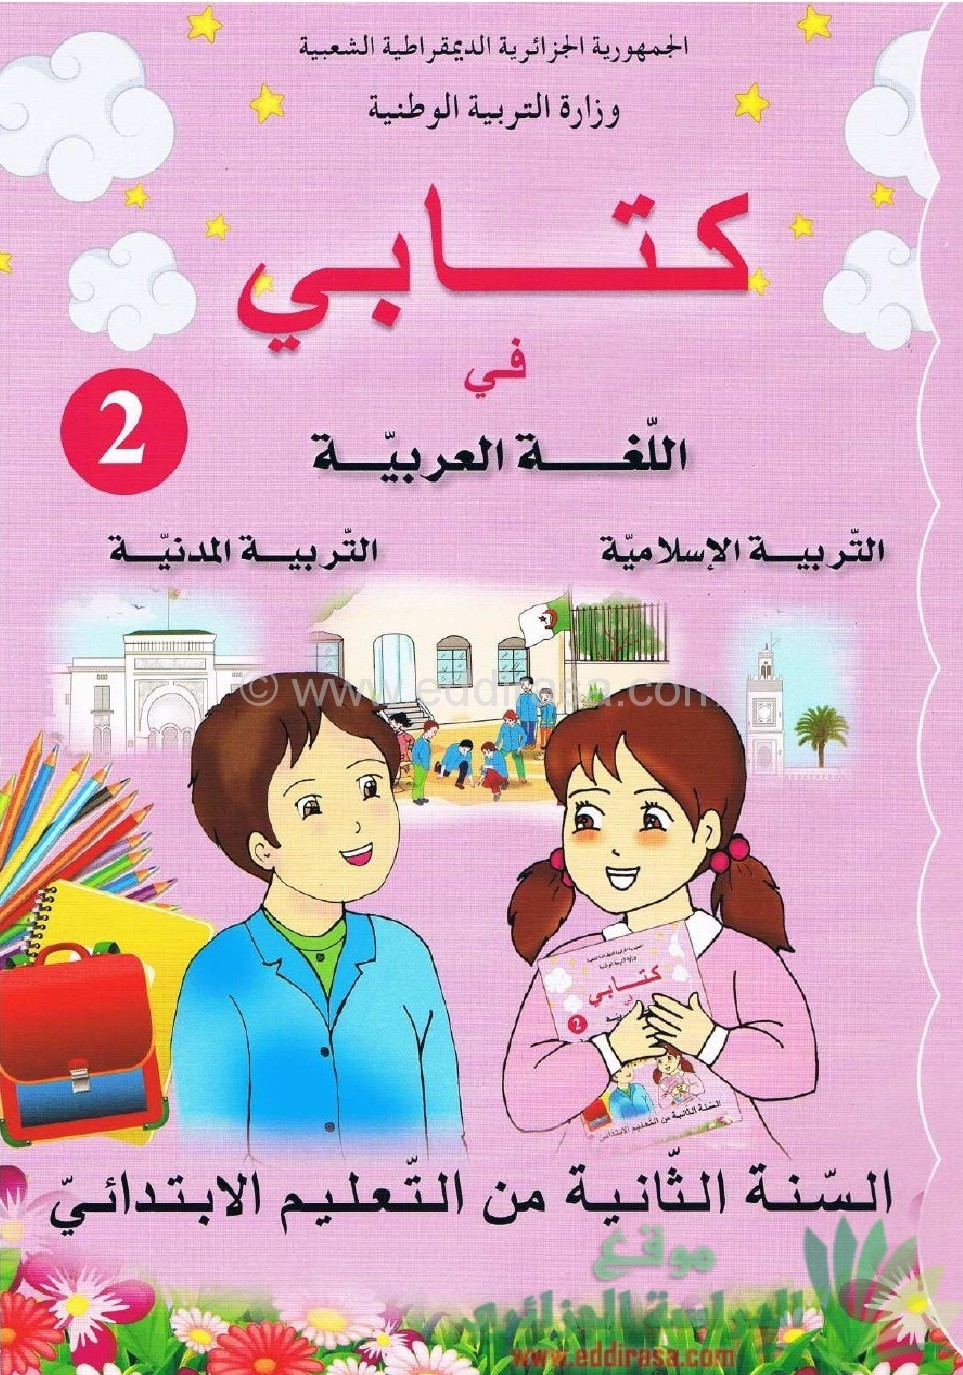 كتابي في اللغة العربية ، التربية الإسلامية ، التربية المدنية ، للسنة الثانية ابتدائي